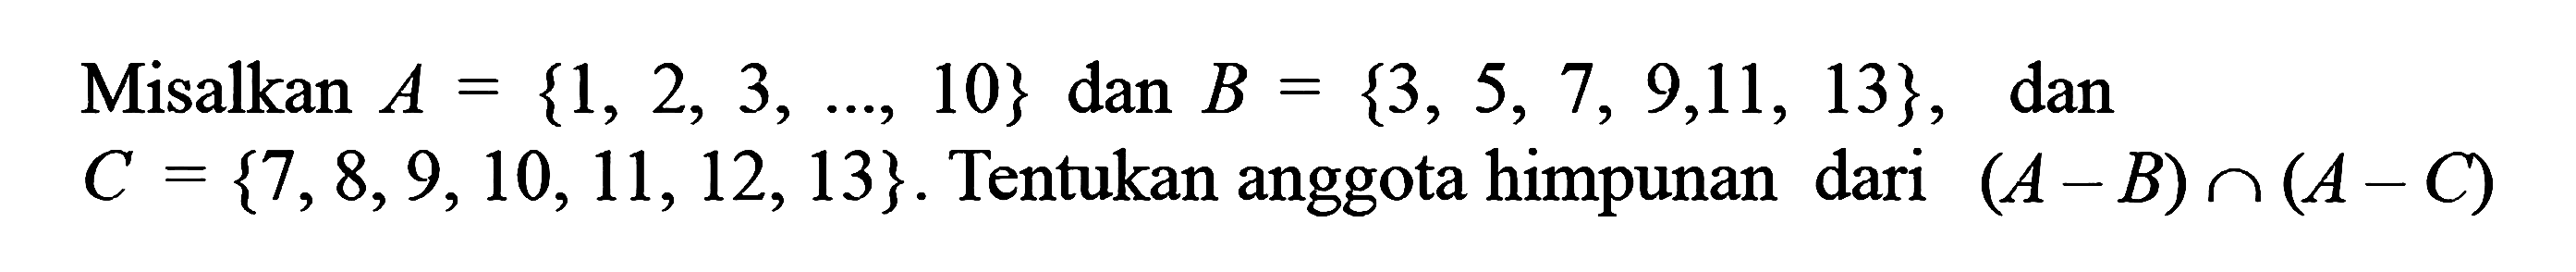 Misalkan A = {1, 2, 3, ....., 10} dan B=  {3, 5, 7, 9,11, 13} , dan C = {7,8,9,10, 11, 12,13}. Tentukan anggota himpunan dari (A - B) n (A - C)